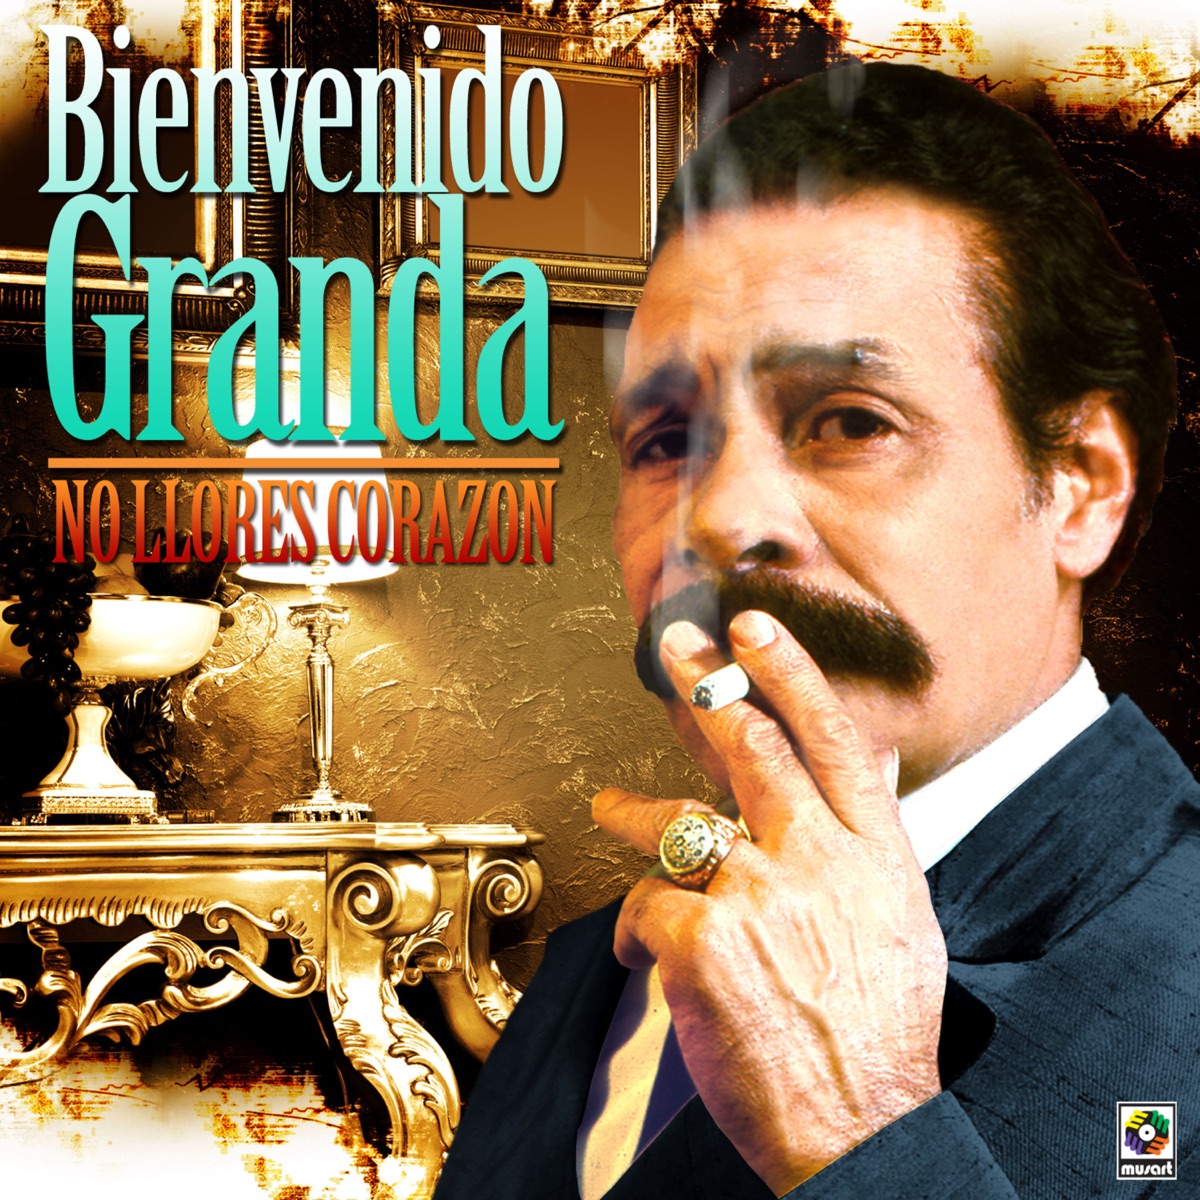 Bienvenido Granda 20 Exitos Originales CD New Sealed